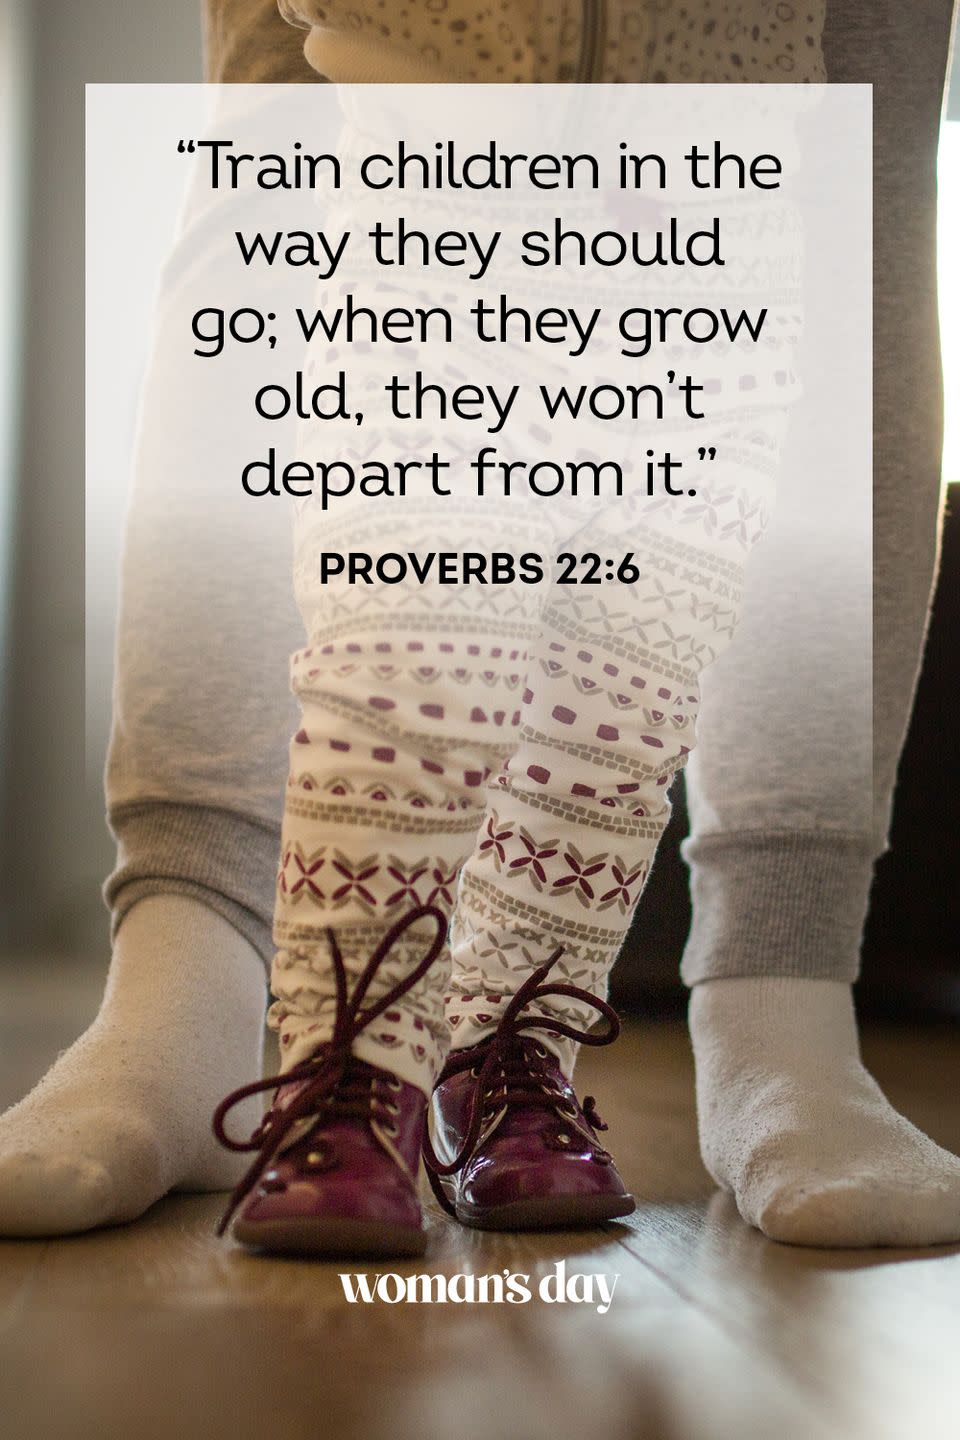 9) Proverbs 22:6